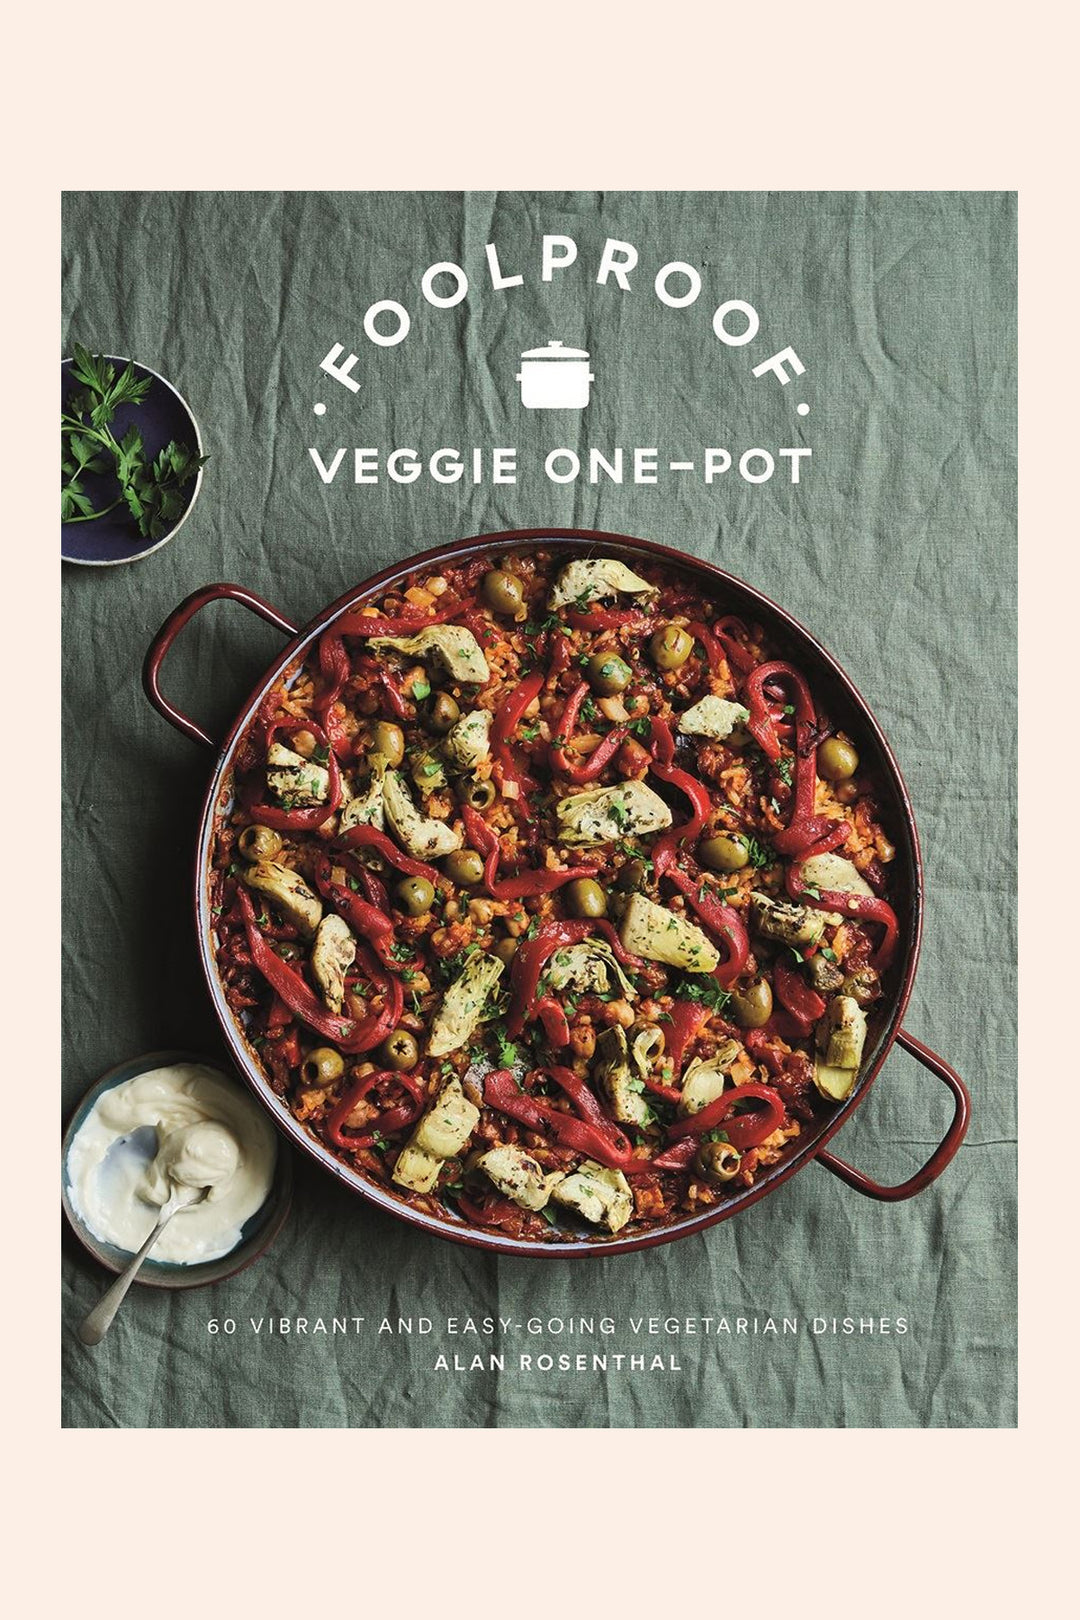 FoolProof Veggie One - Pot